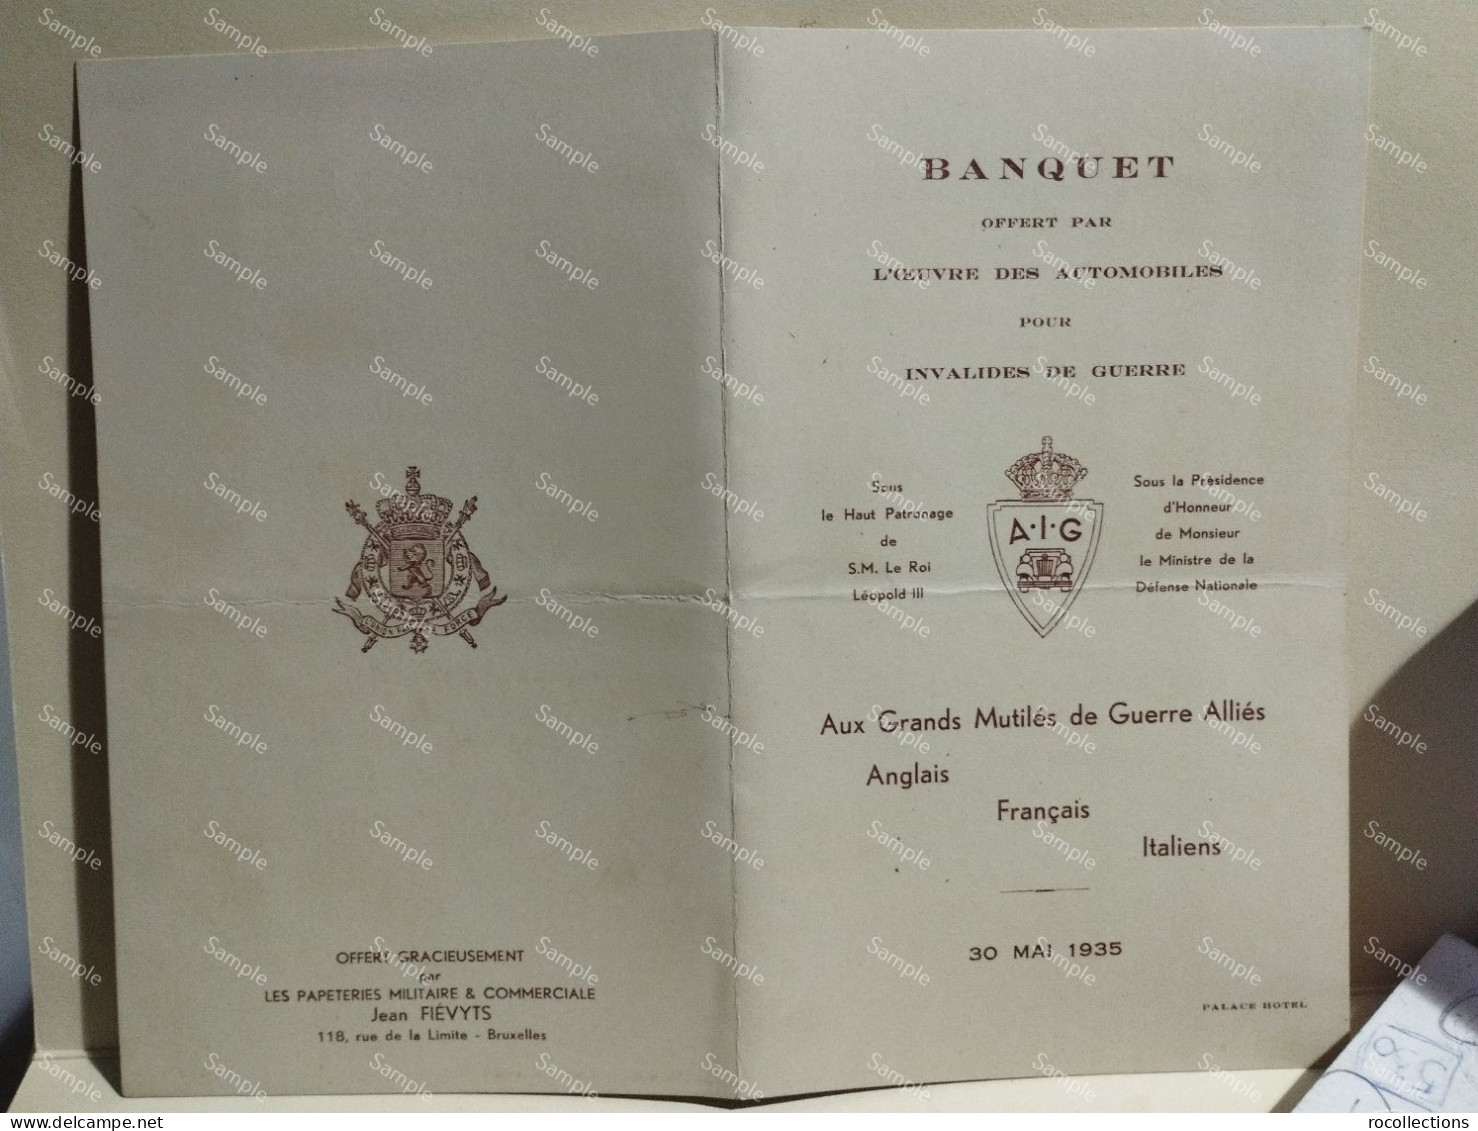 France Menù Programme BANQUET Invalides De Guerre Annglais Francais Italiens 30 Mai 1935 Palace Hotel Bruxelles. Signed - Menus